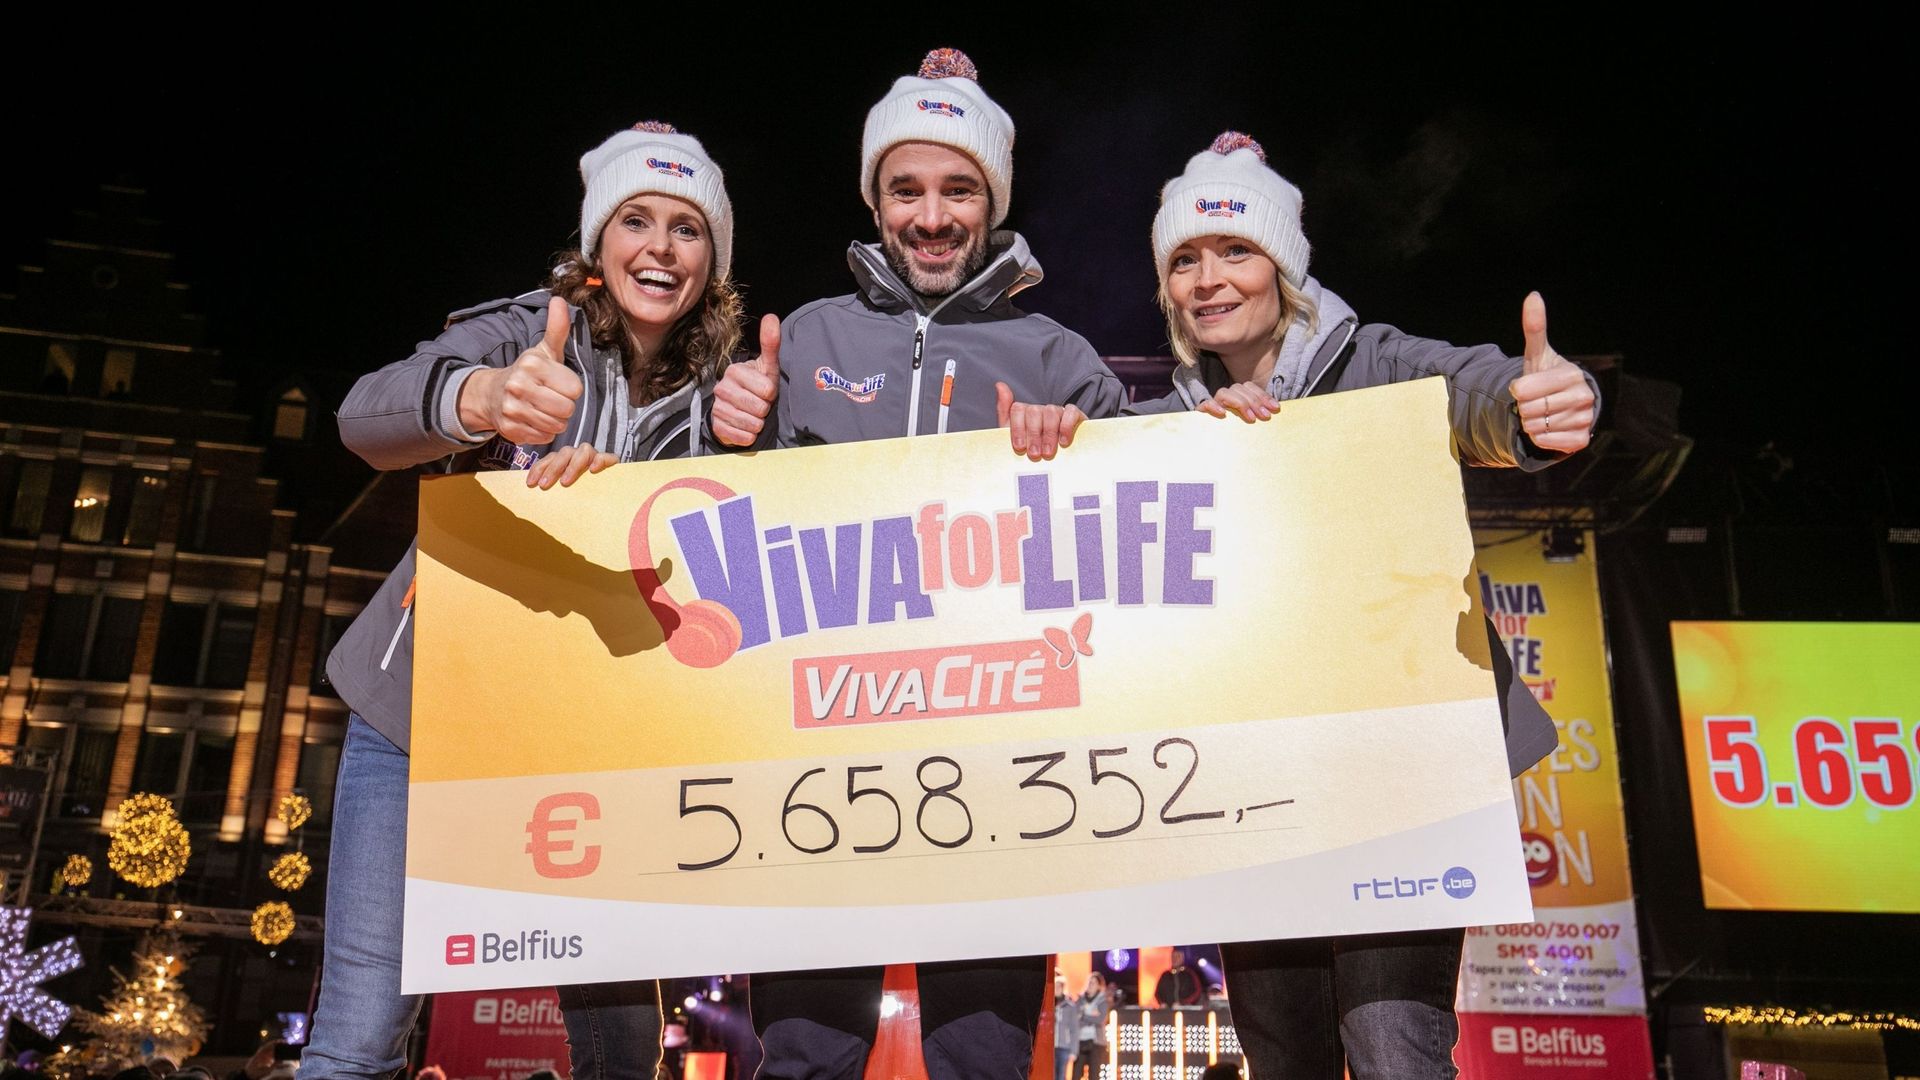 5.658 352€ récoltés pour Viva for Life : MERCI!